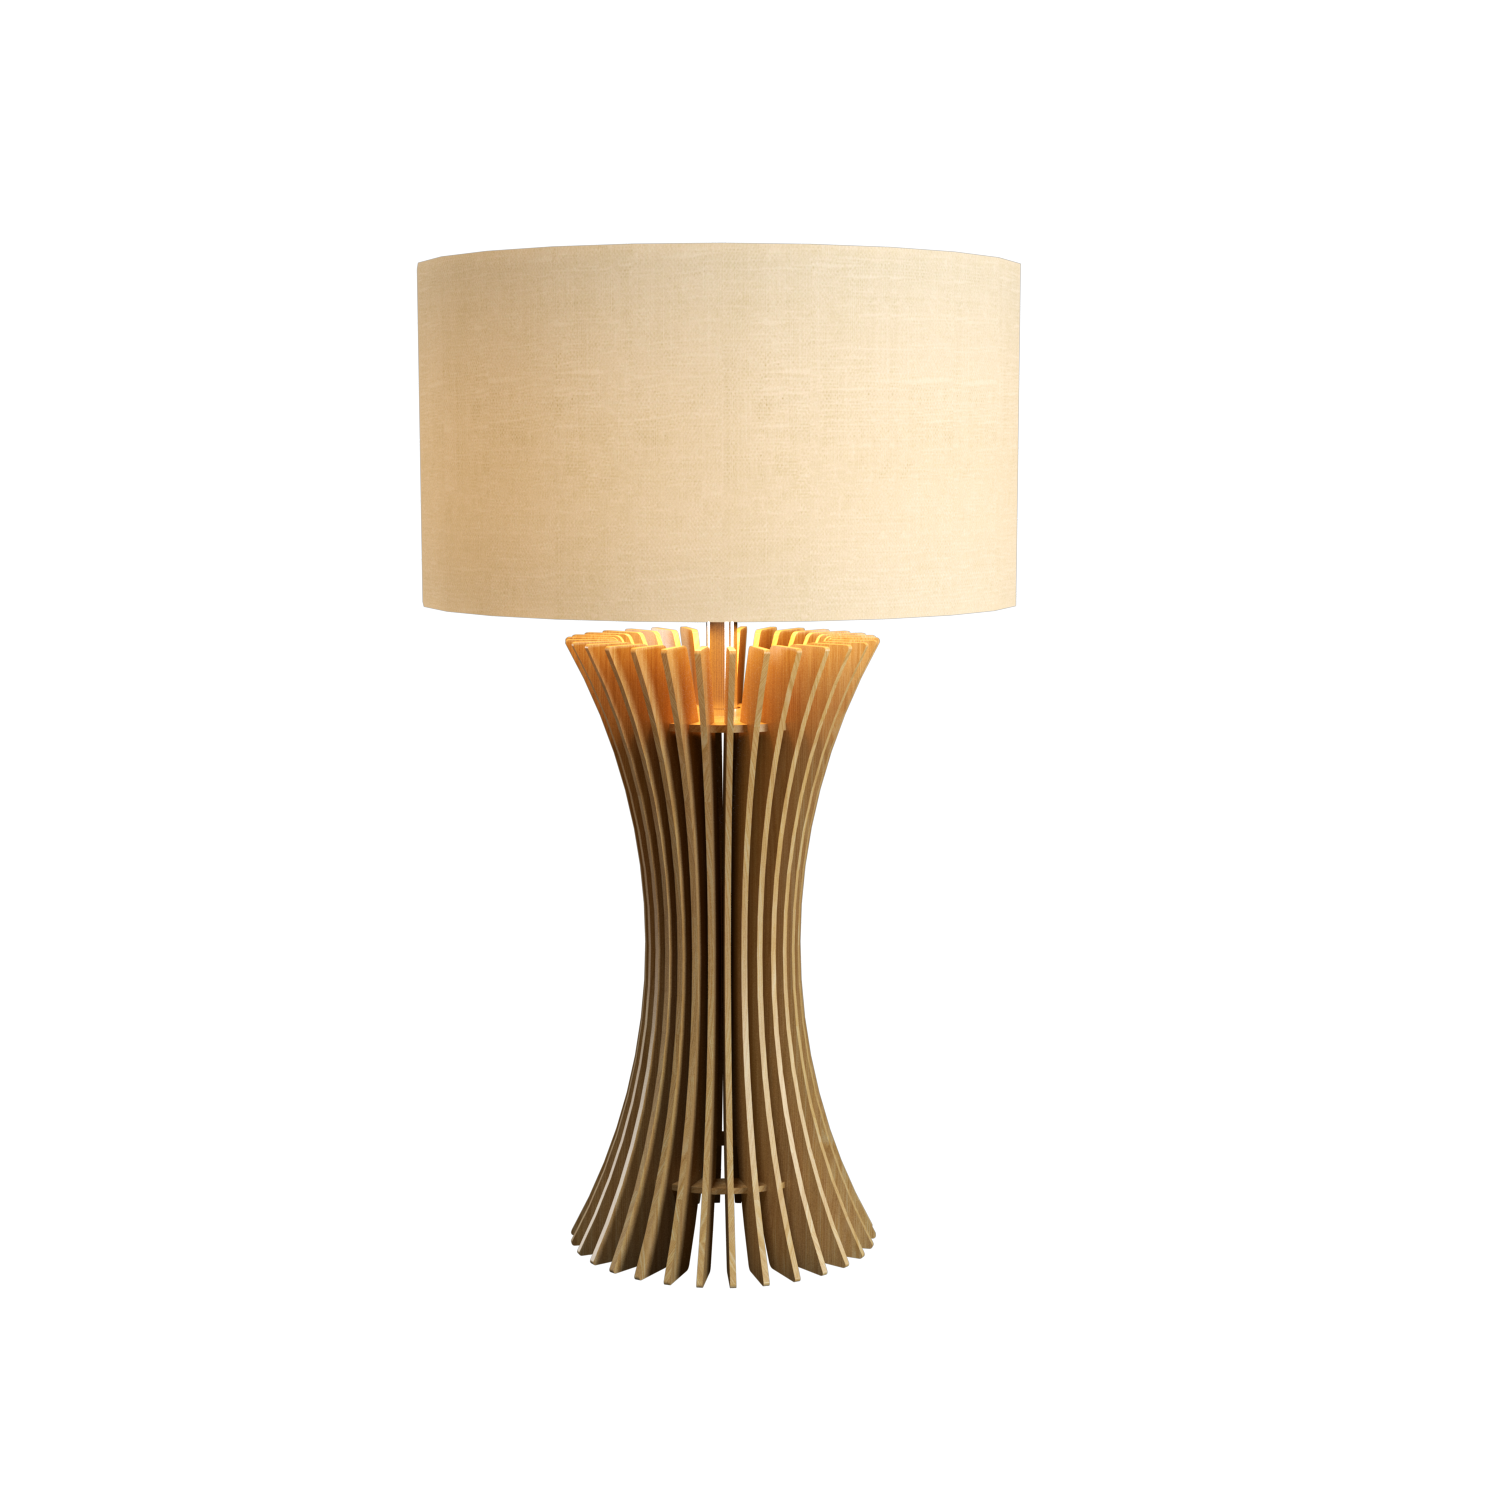 Table Lamp Accord Stecche Di Legno 7013 - Stecche Di Legno Line Accord Lighting | 45. Sand